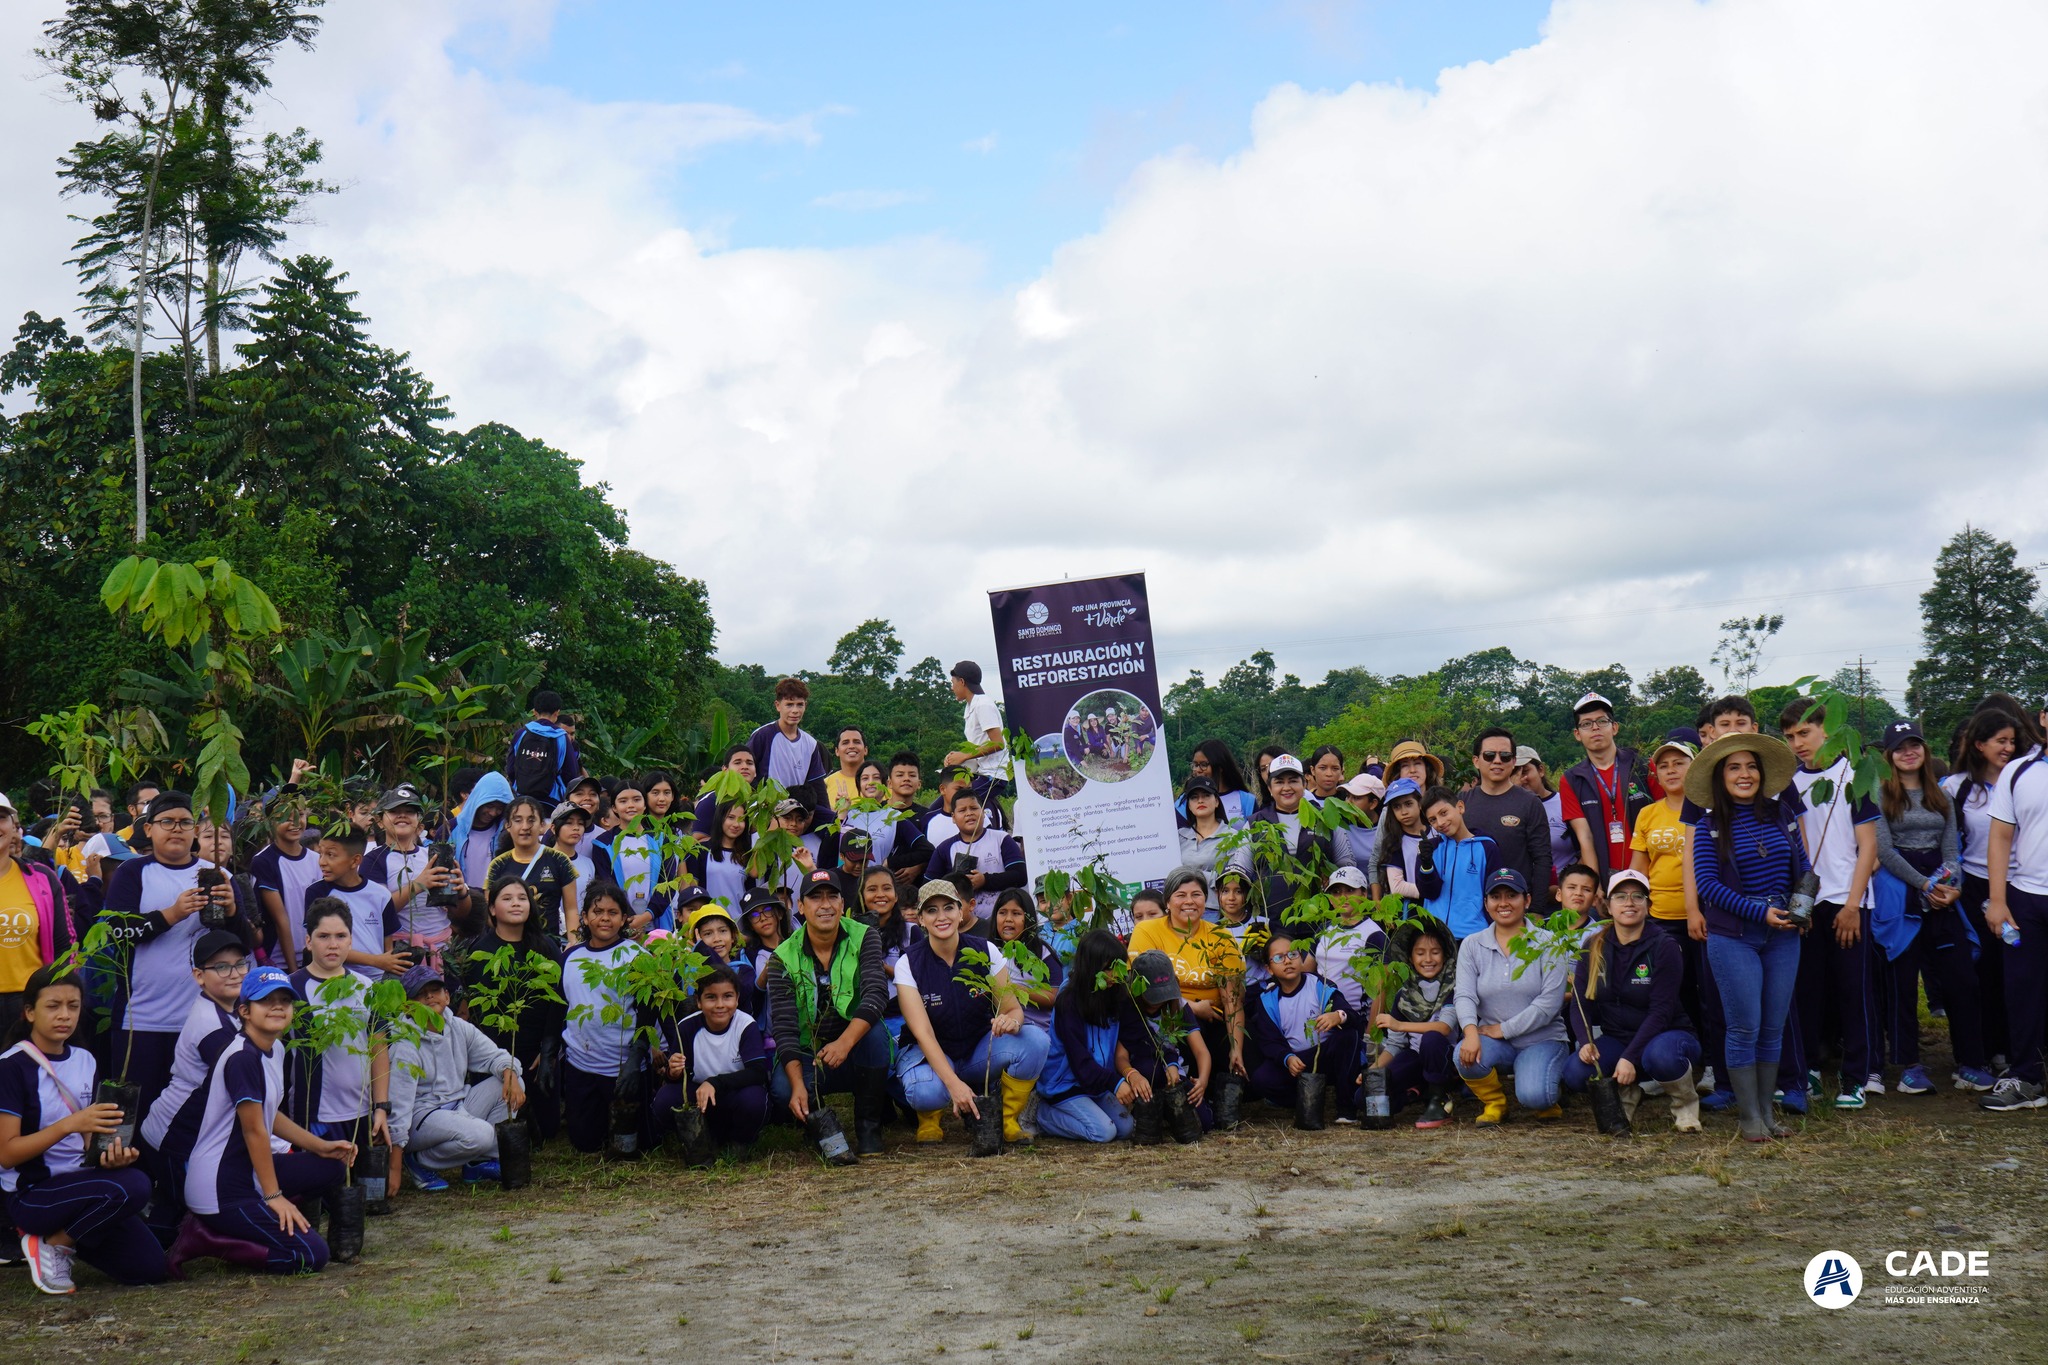 Estudiantes adventistas plantan más de 1500 árboles a favor de la restauración forestal en Ecuador